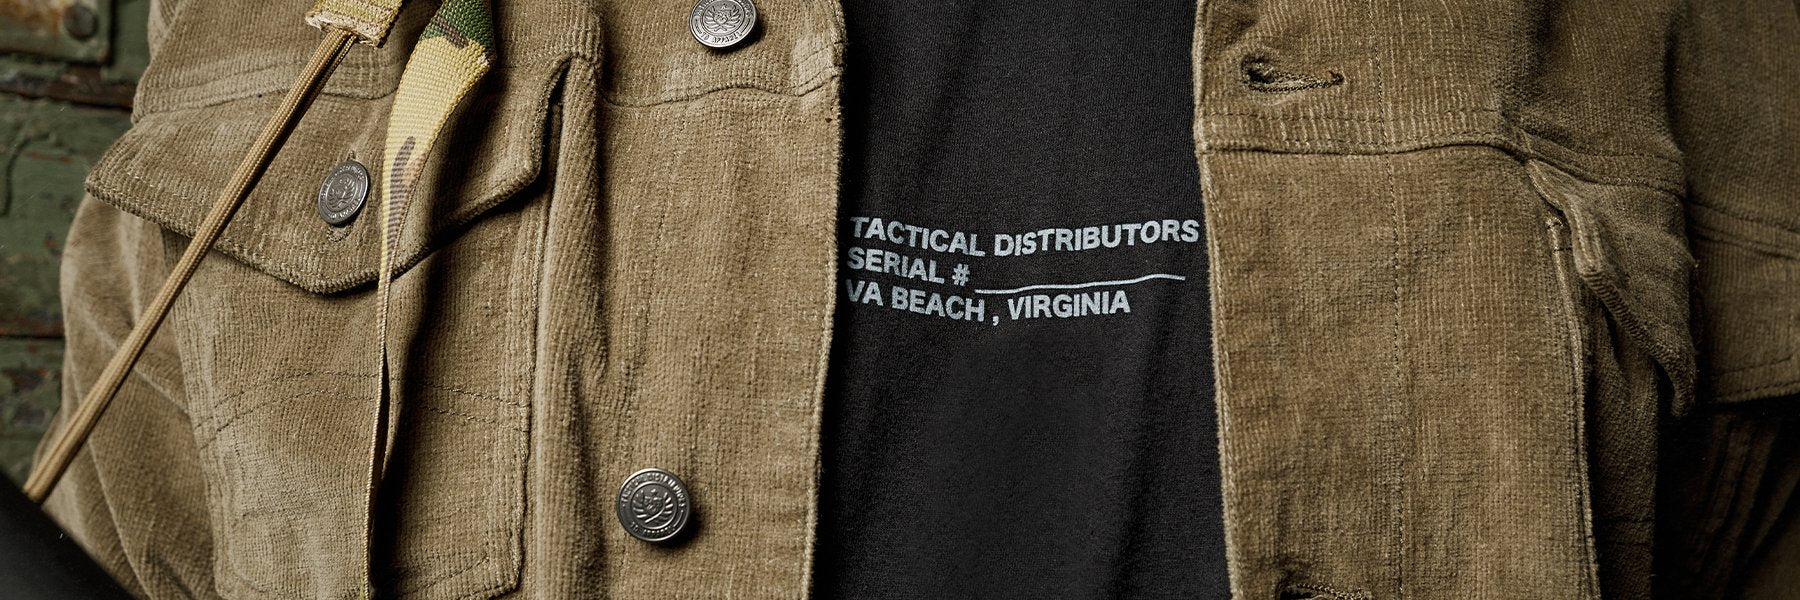 Tactical Apparel  Tactical Distributors